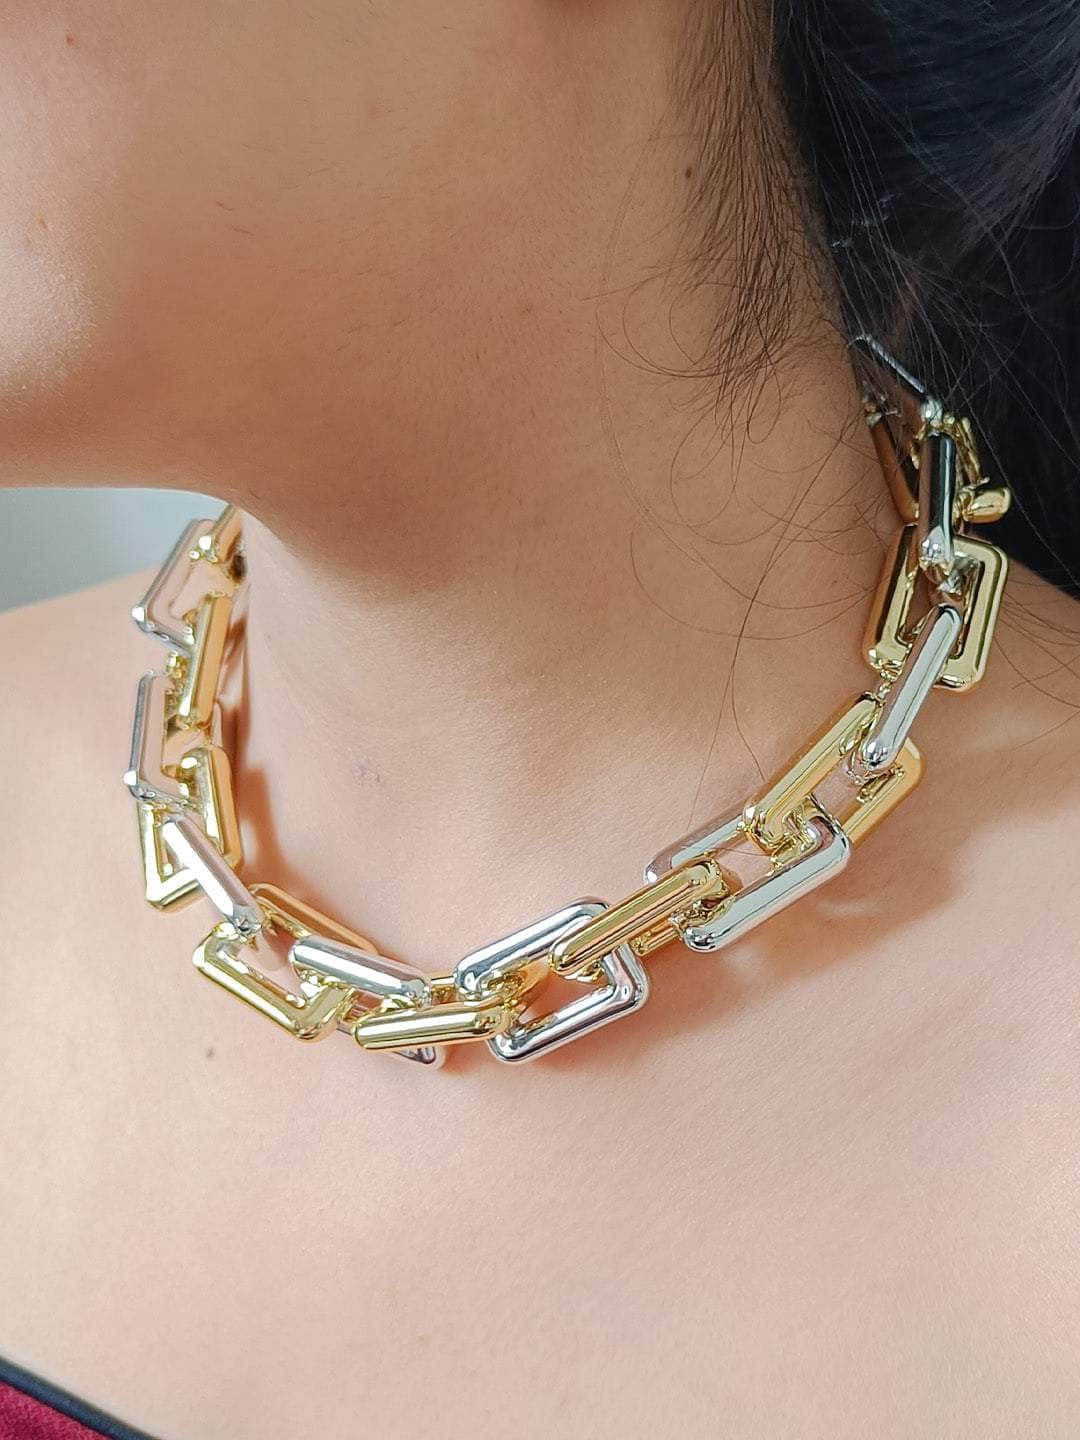 Ishhaara Huma Qureshi In Rectangular Link Acrylic Necklace